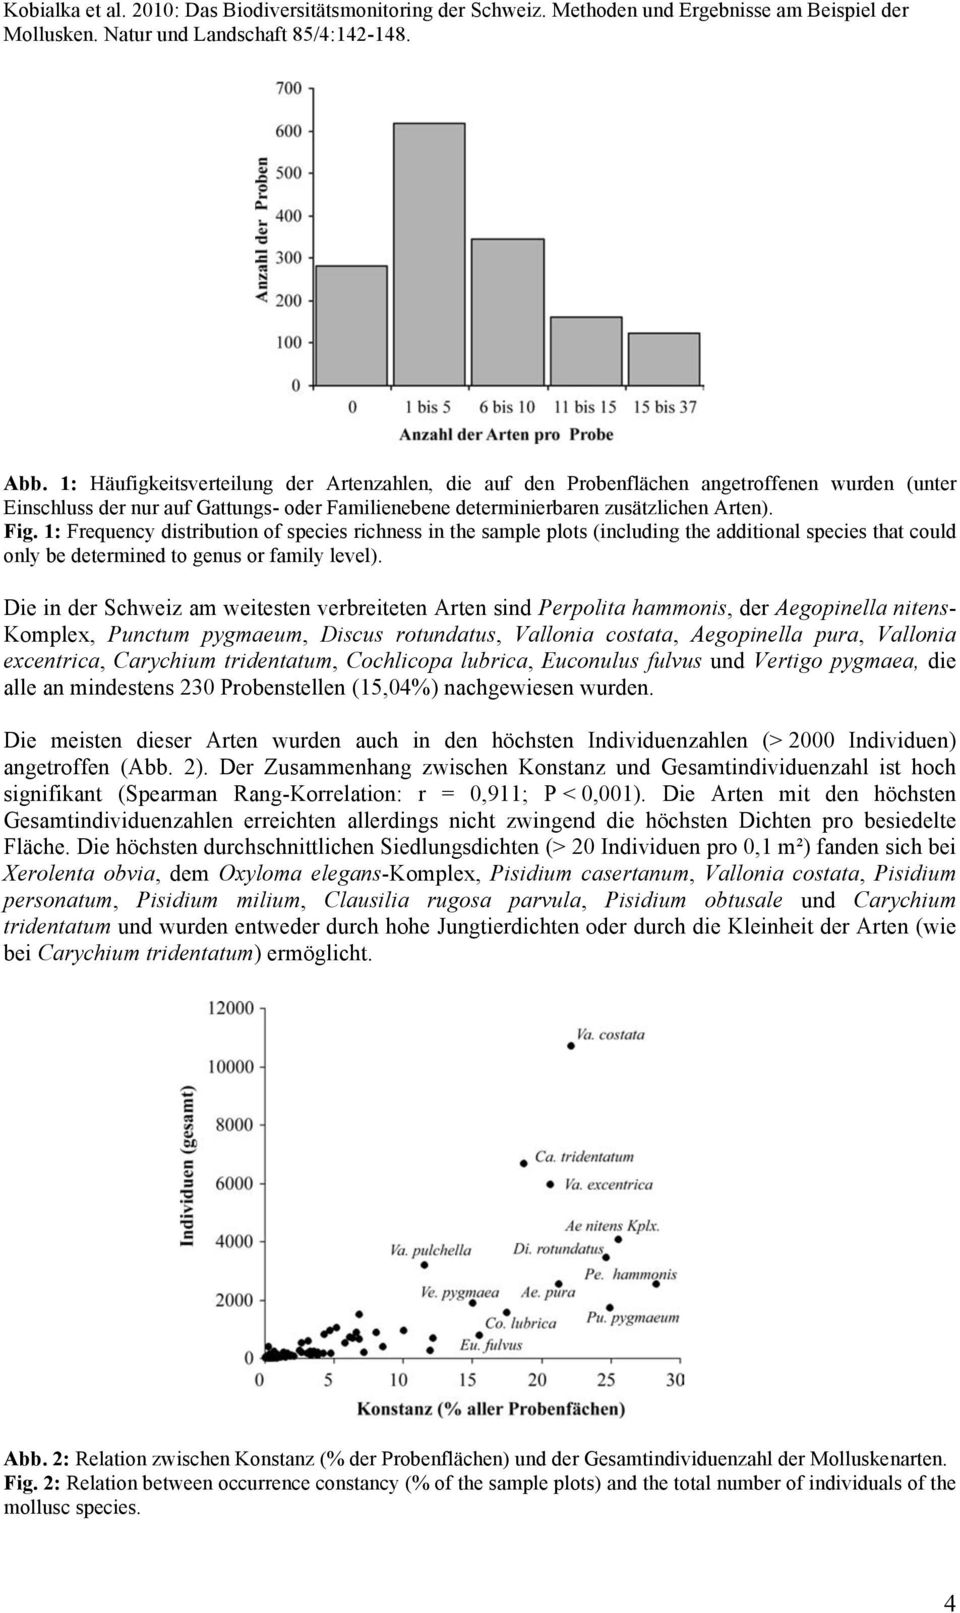 Die in der Schweiz am weitesten verbreiteten Arten sind Perpolita hammonis, der Aegopinella nitens- Komplex, Punctum pygmaeum, Discus rotundatus, Vallonia costata, Aegopinella pura, Vallonia